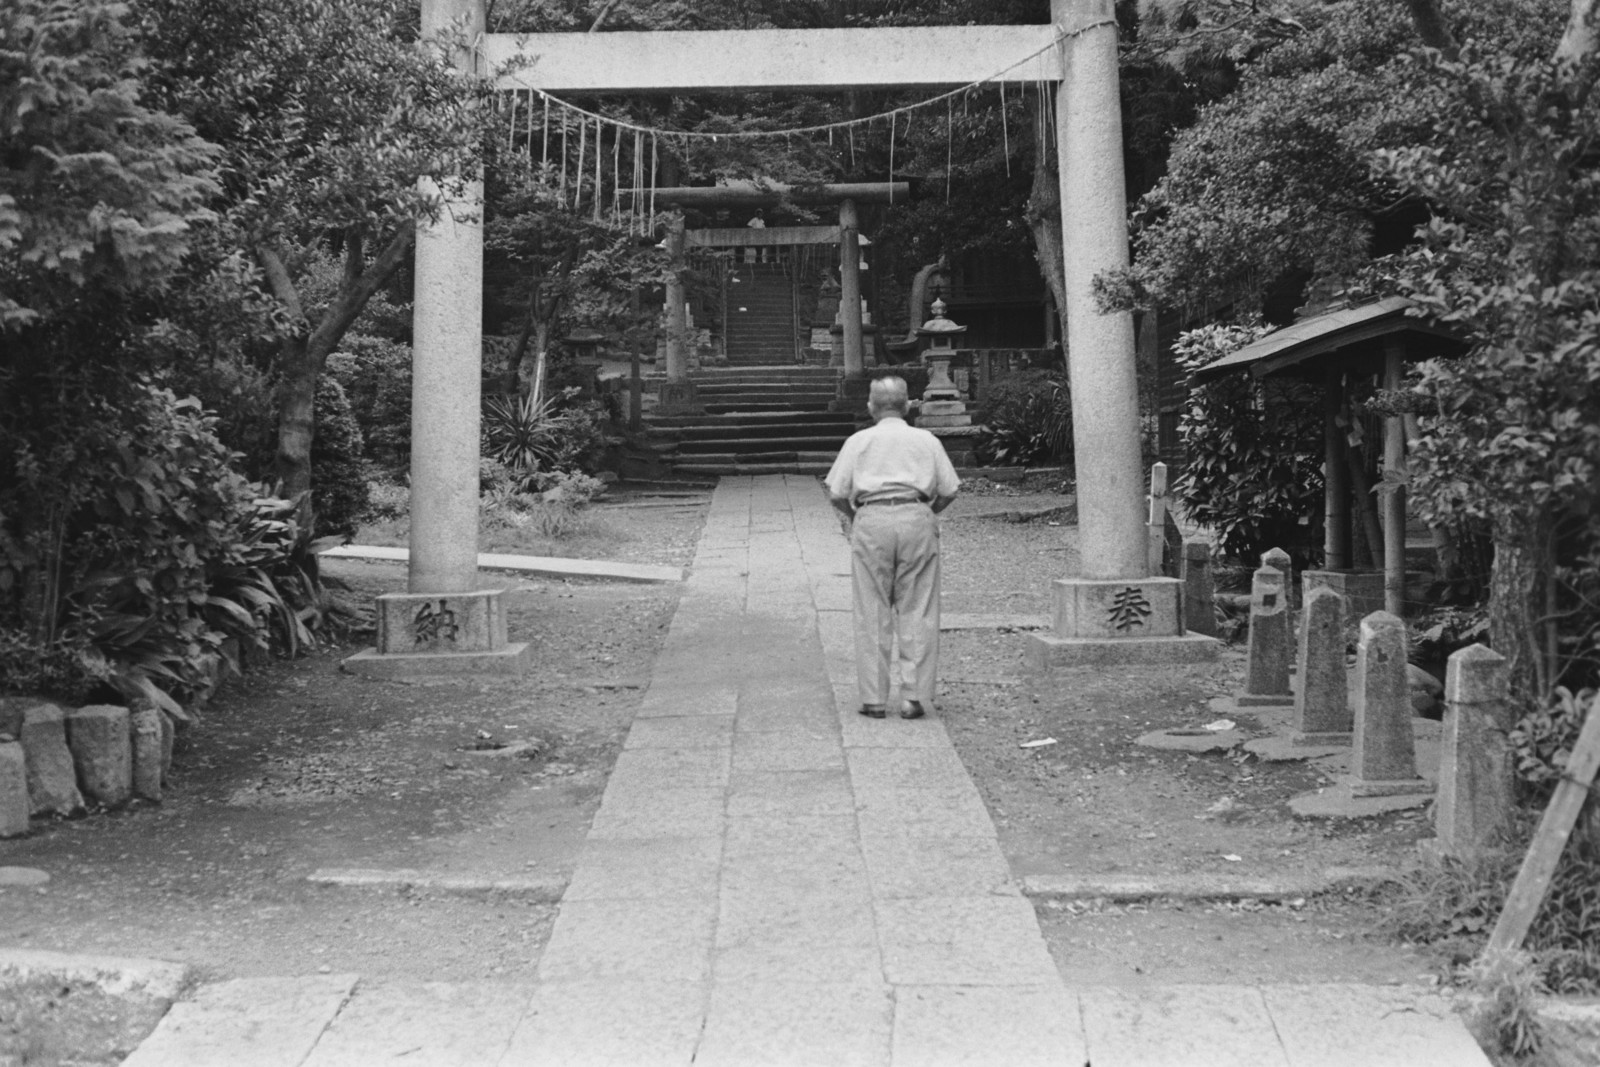 三宿神社